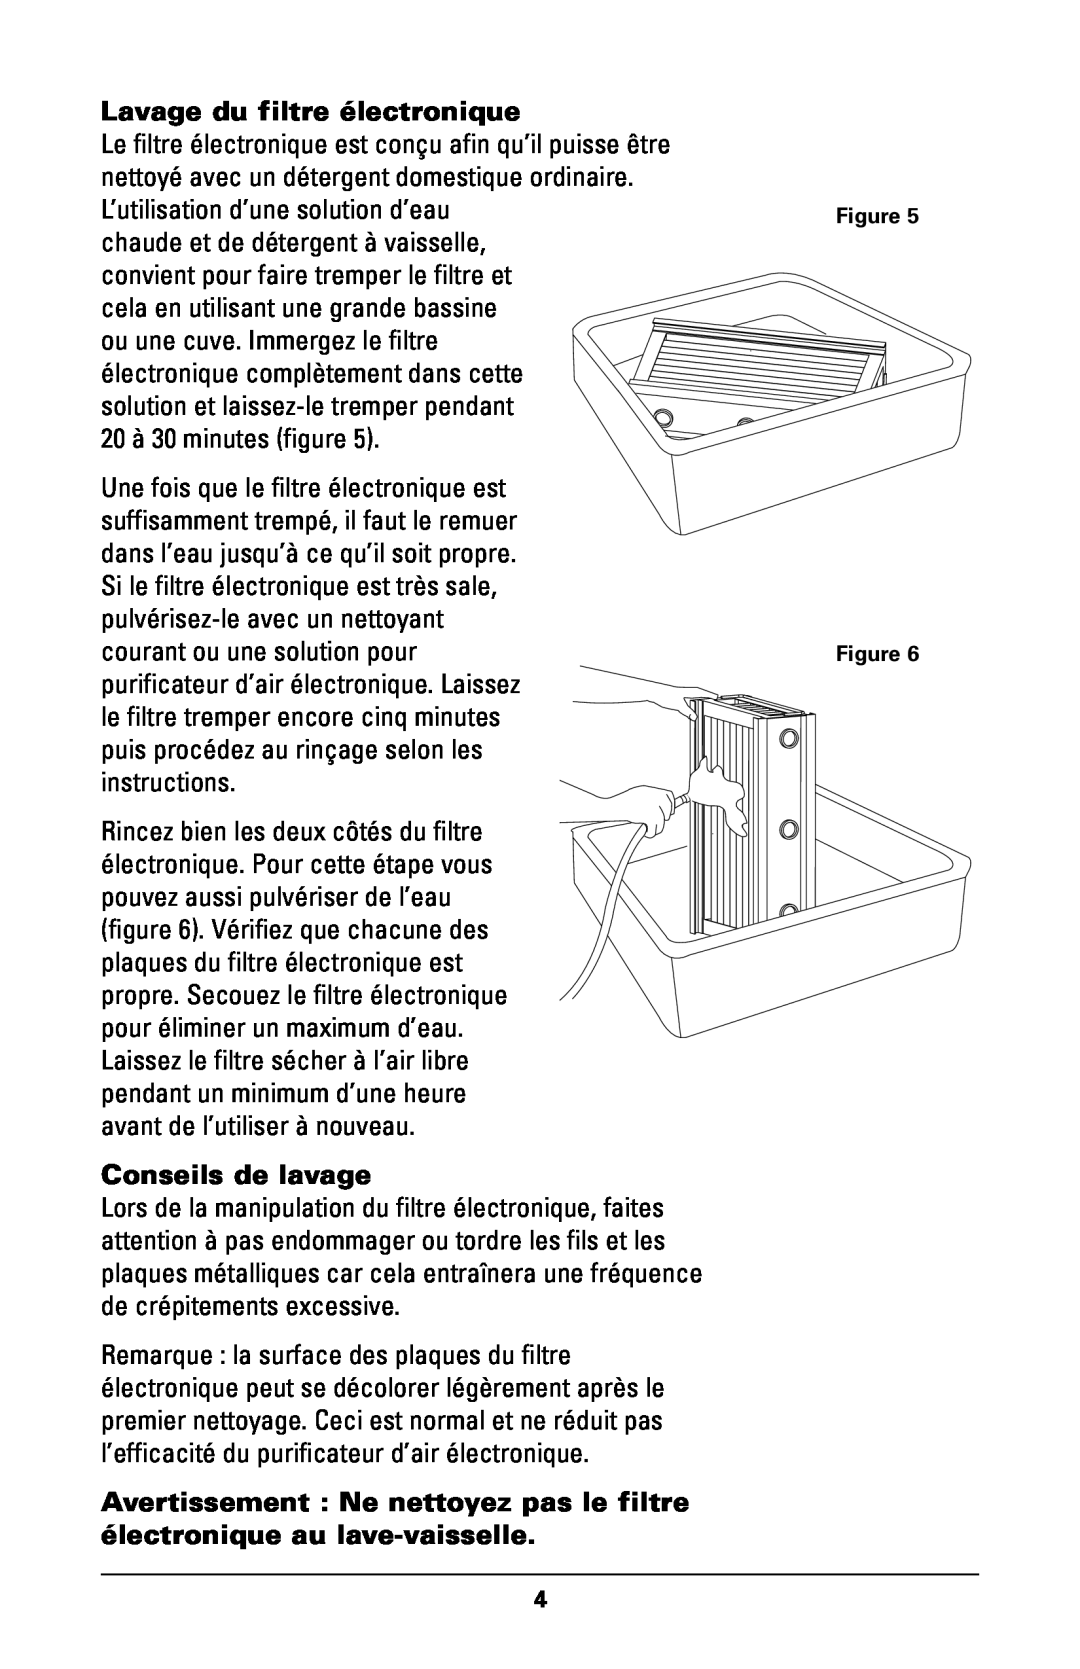 Trion High Efficiency Console Electronic Air Purifier manual Lavage du filtre électronique, Conseils de lavage 